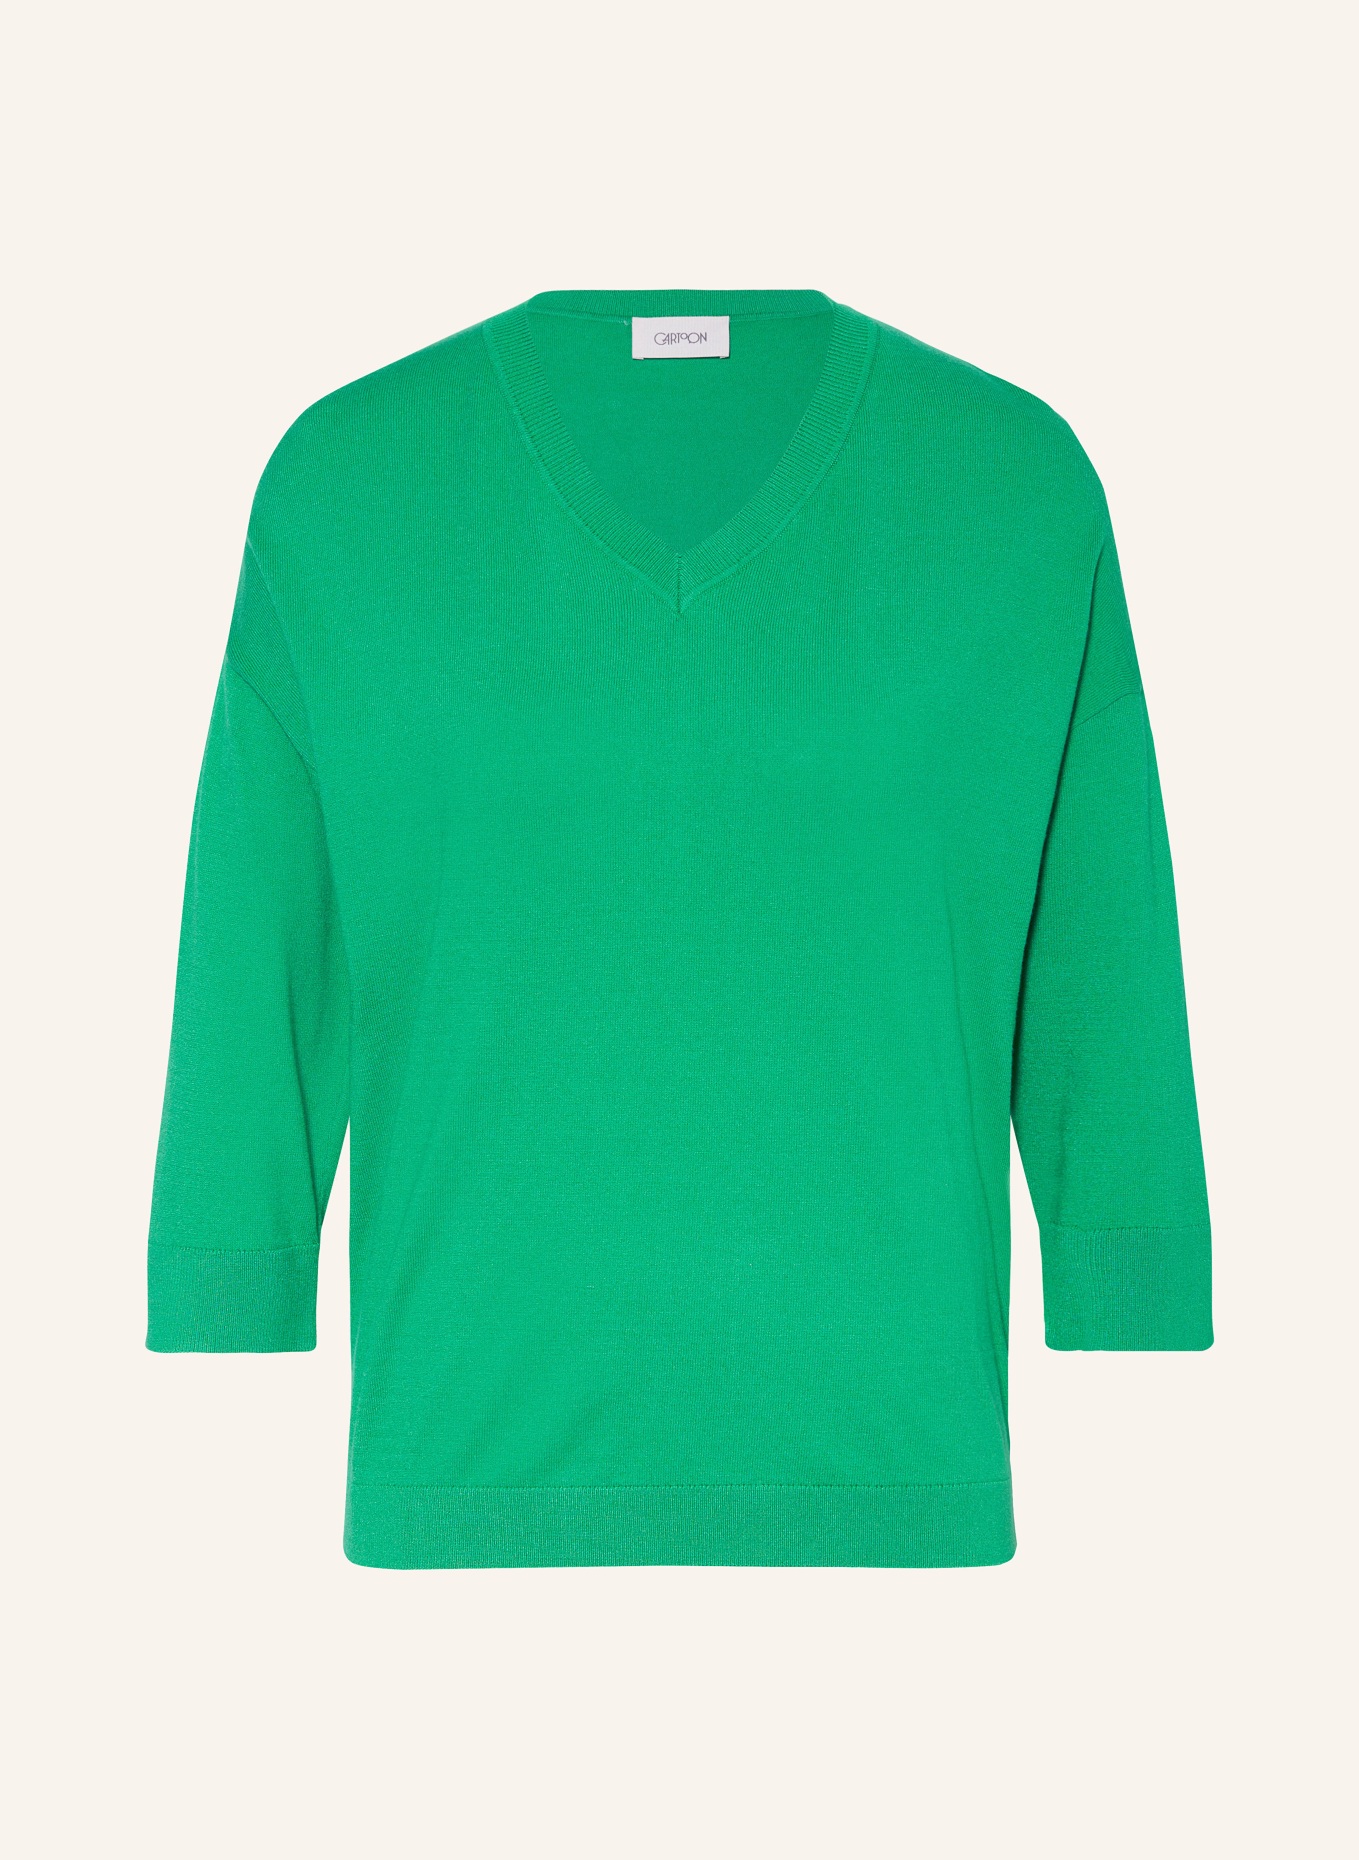 CARTOON Strickshirt mit 3/4-Arm, Farbe: GRÜN (Bild 1)